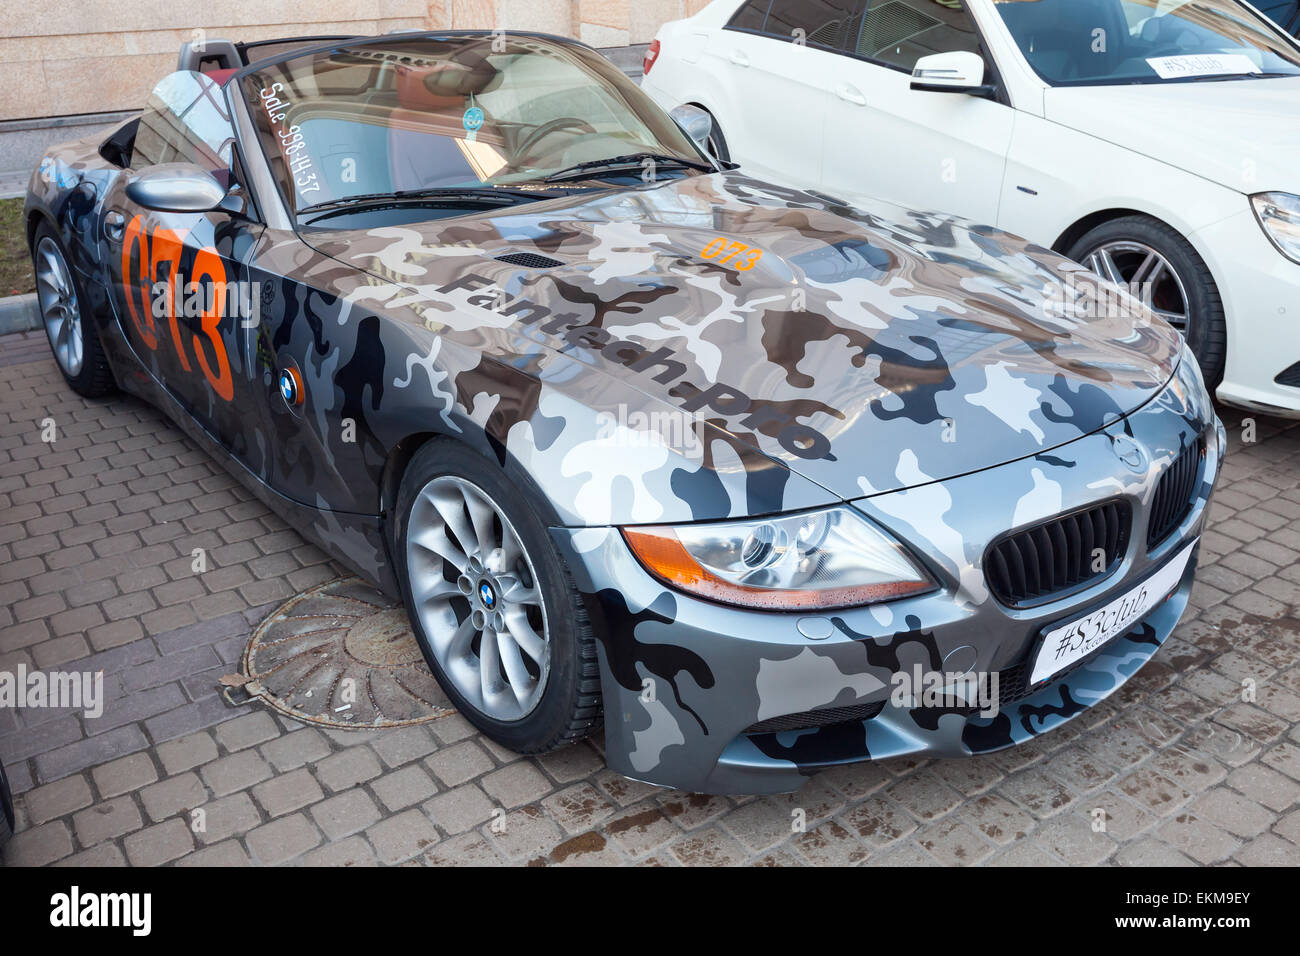 Saint-pétersbourg, Russie - le 11 avril 2015 : BMW Z4 roadster voiture avec des couleurs de camouflage se stratifie sur la rue, à proximité u Banque D'Images